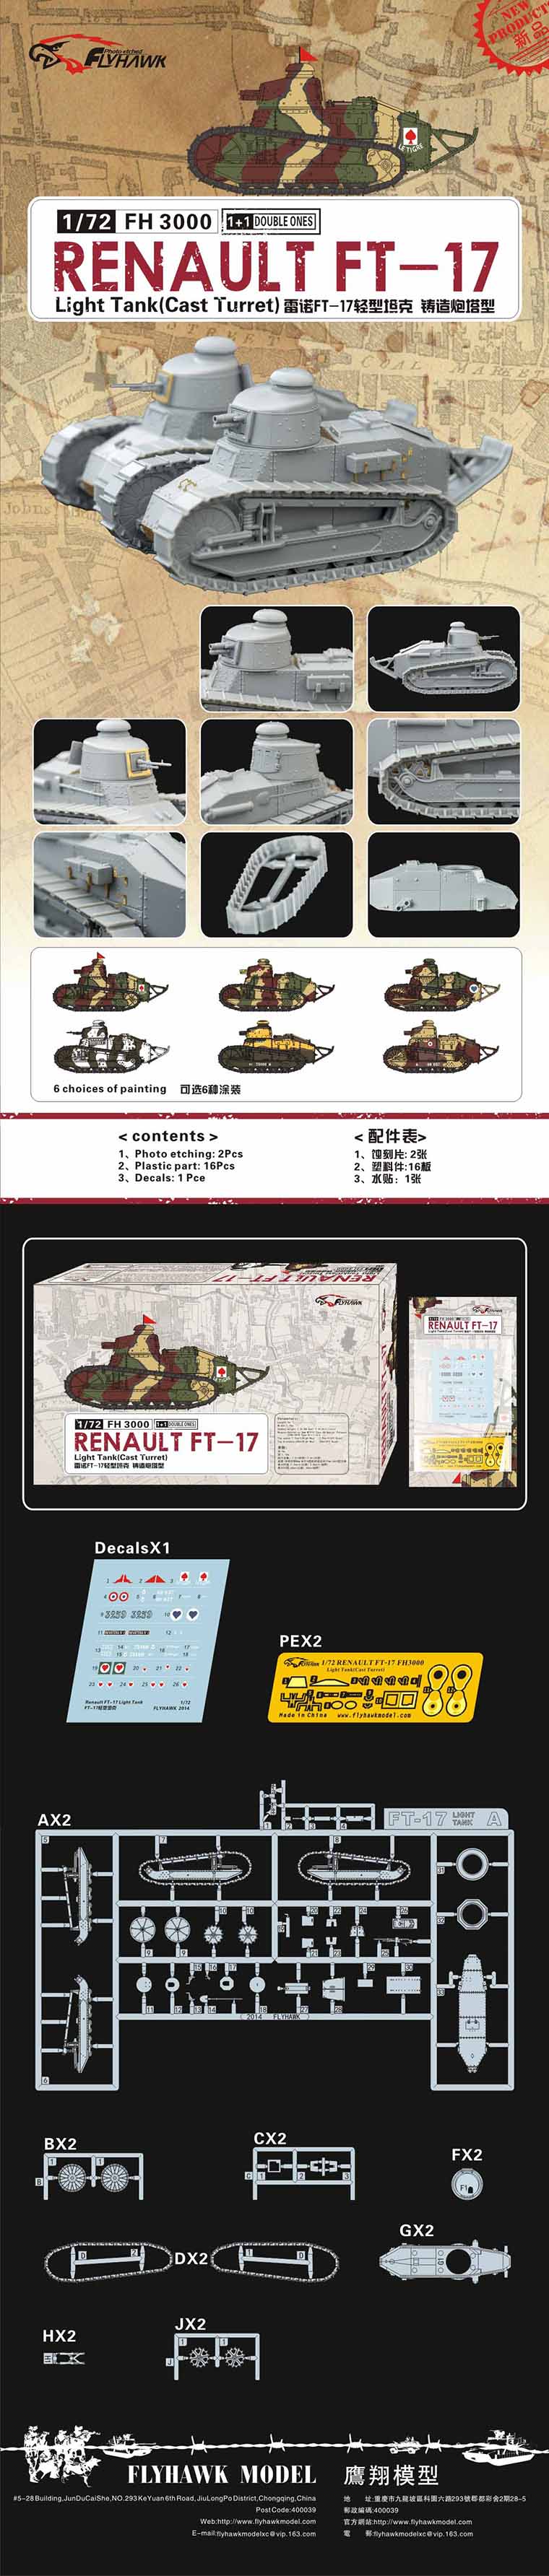 【“鹰翔模型”独家直供】法国FT-17坦克铸造炮塔型